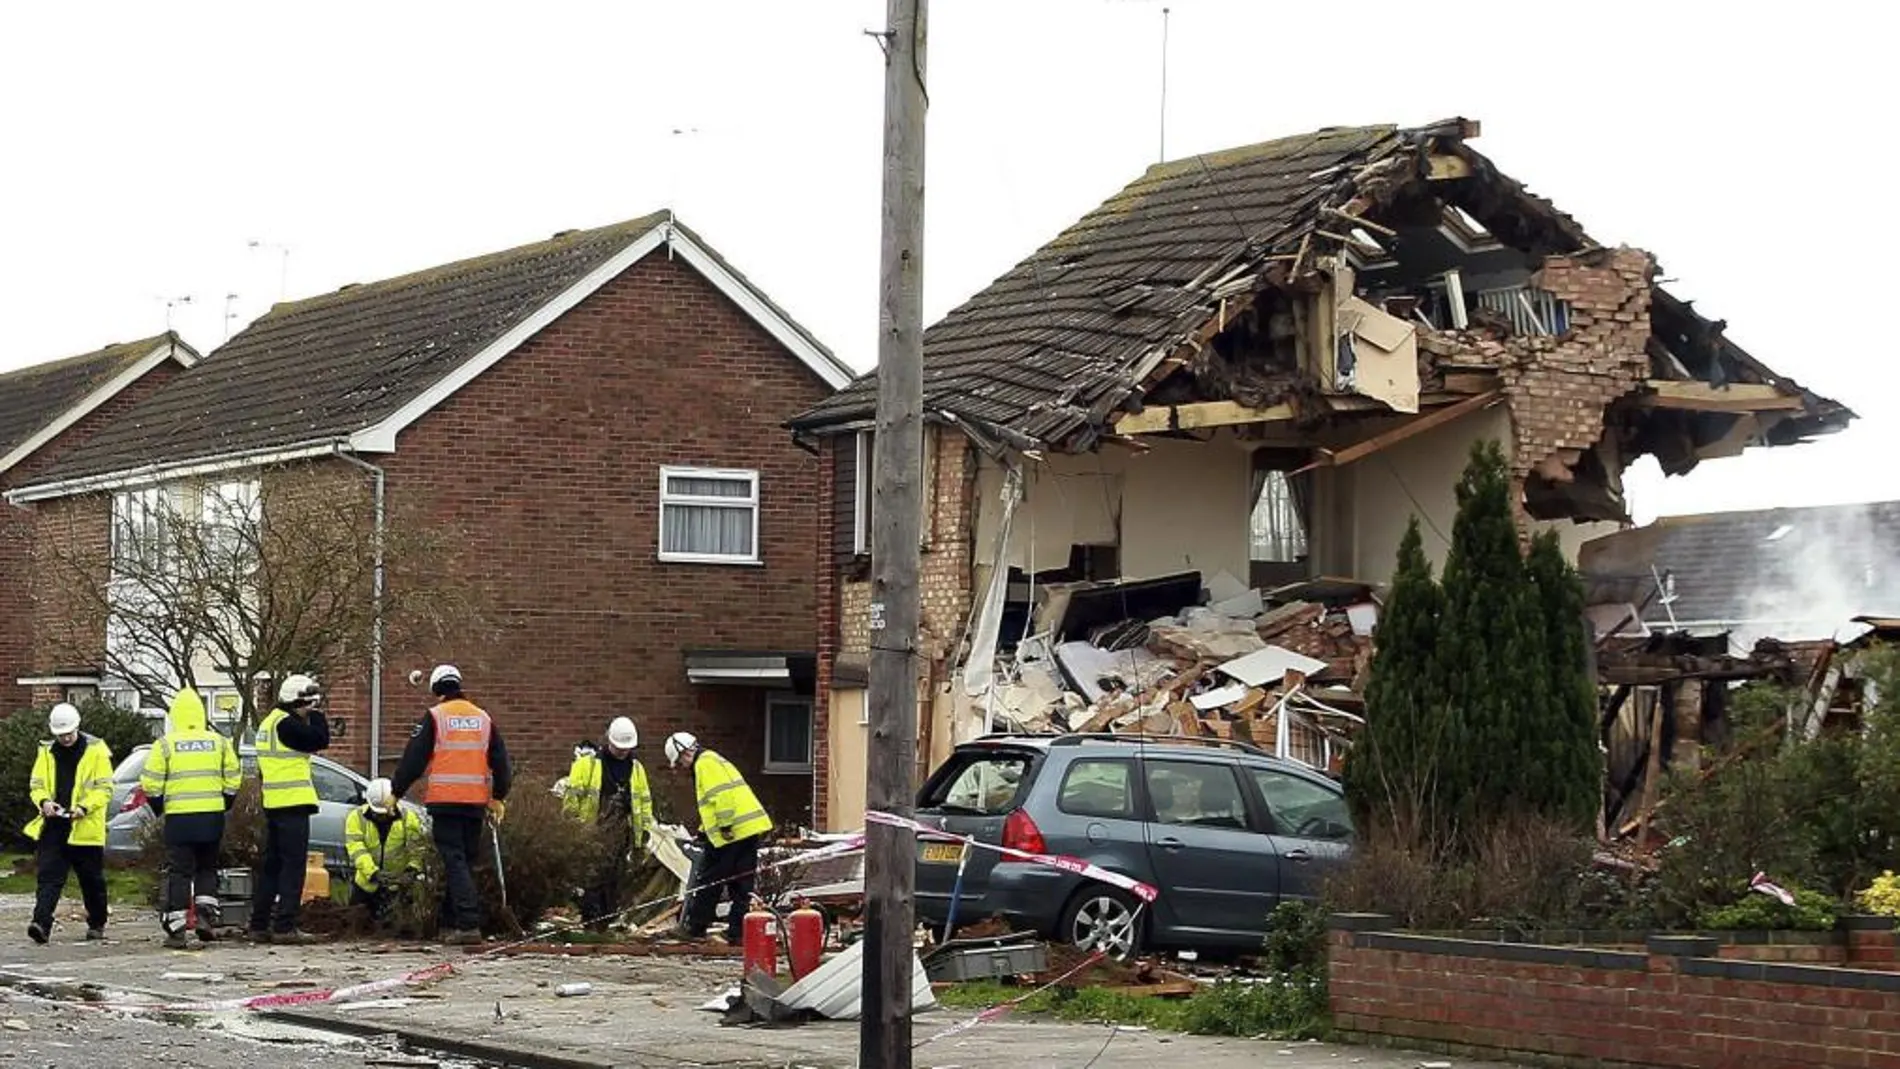 Miembros del servicio de emergencias trabajan en el lugar donde se ha producido una explosión de gas, en Clacton, Reino Unido